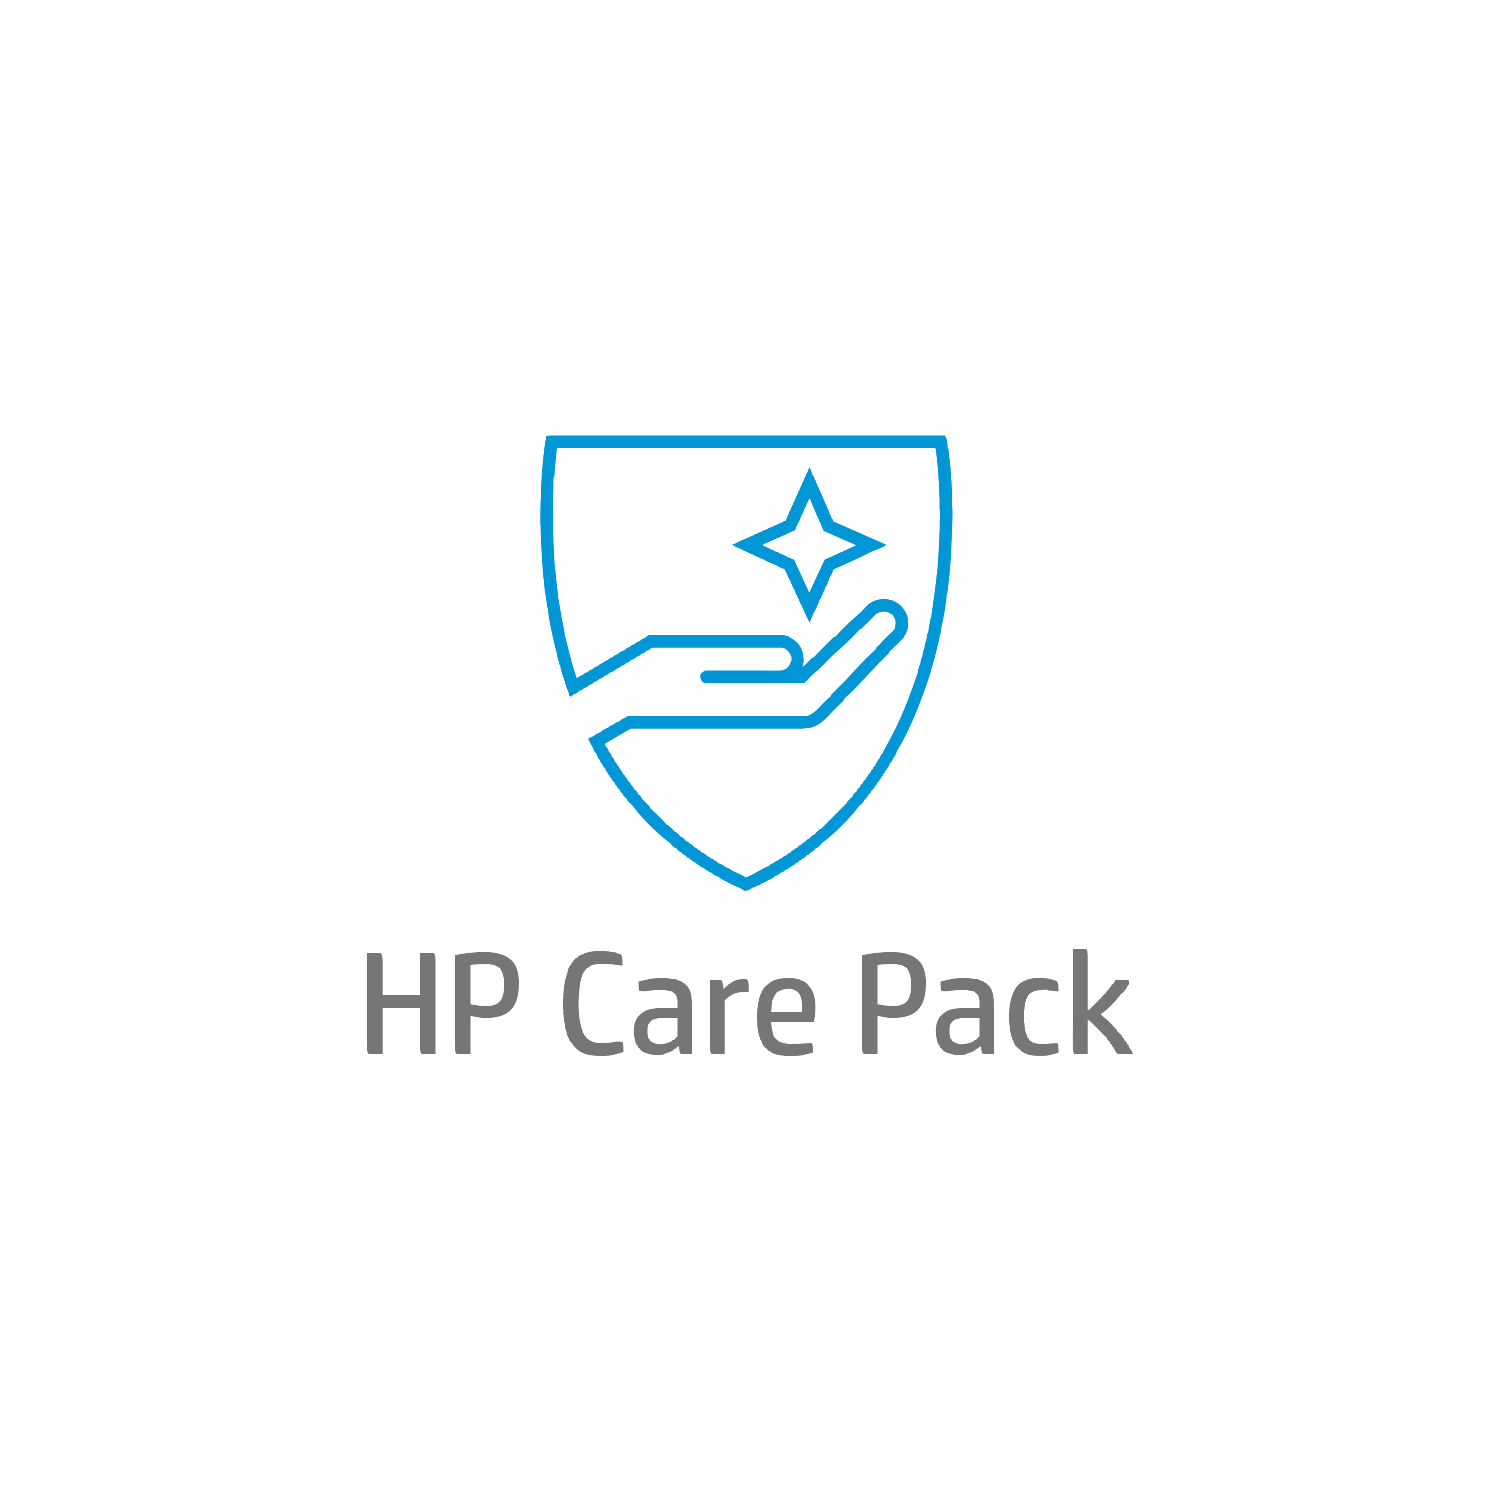 Bild von HP Electronic HP Care Pack Parts Coverage Hardware Support Post Warranty - Serviceerweiterung - Vorabaustausch defekter Komponenten